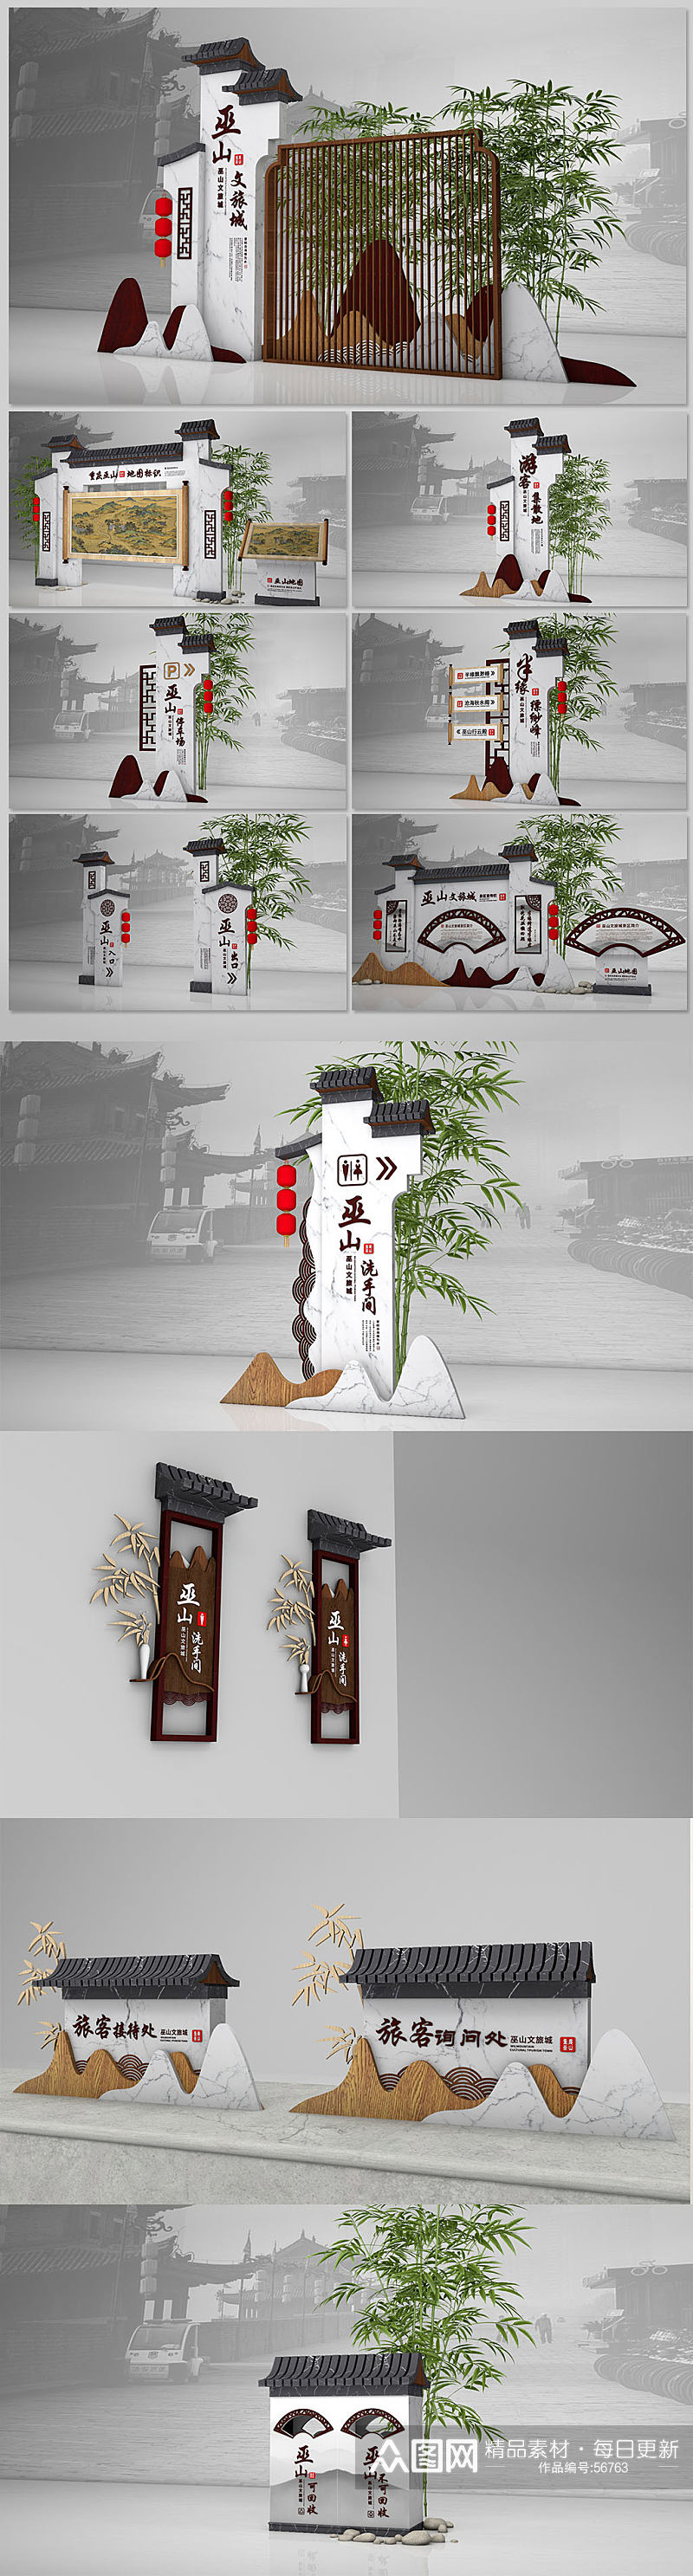 中国风抽象山水景区徽派度假村古镇公园景区导视素材